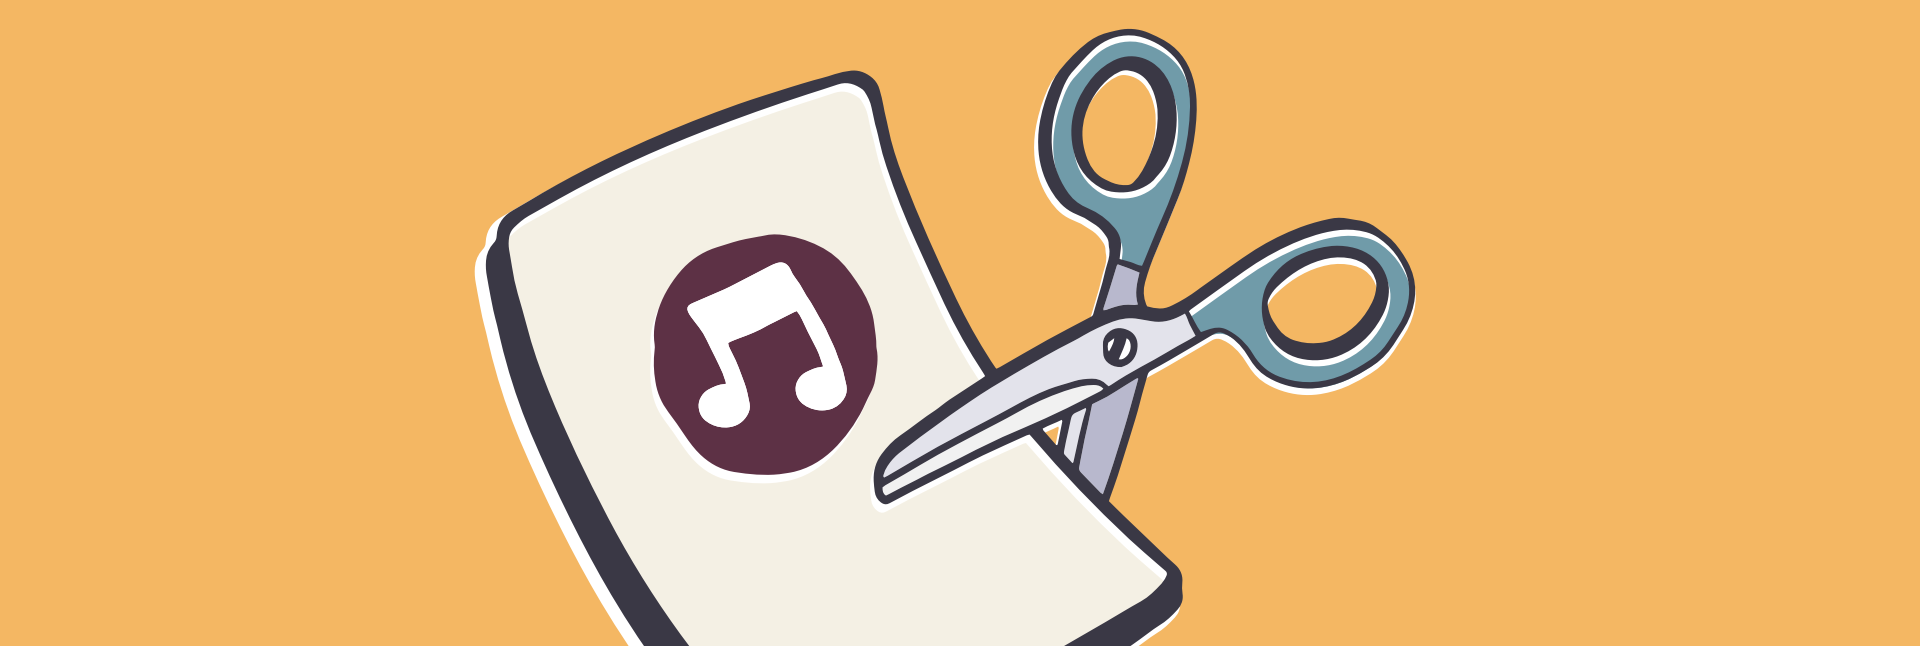 Mac Cut Music App